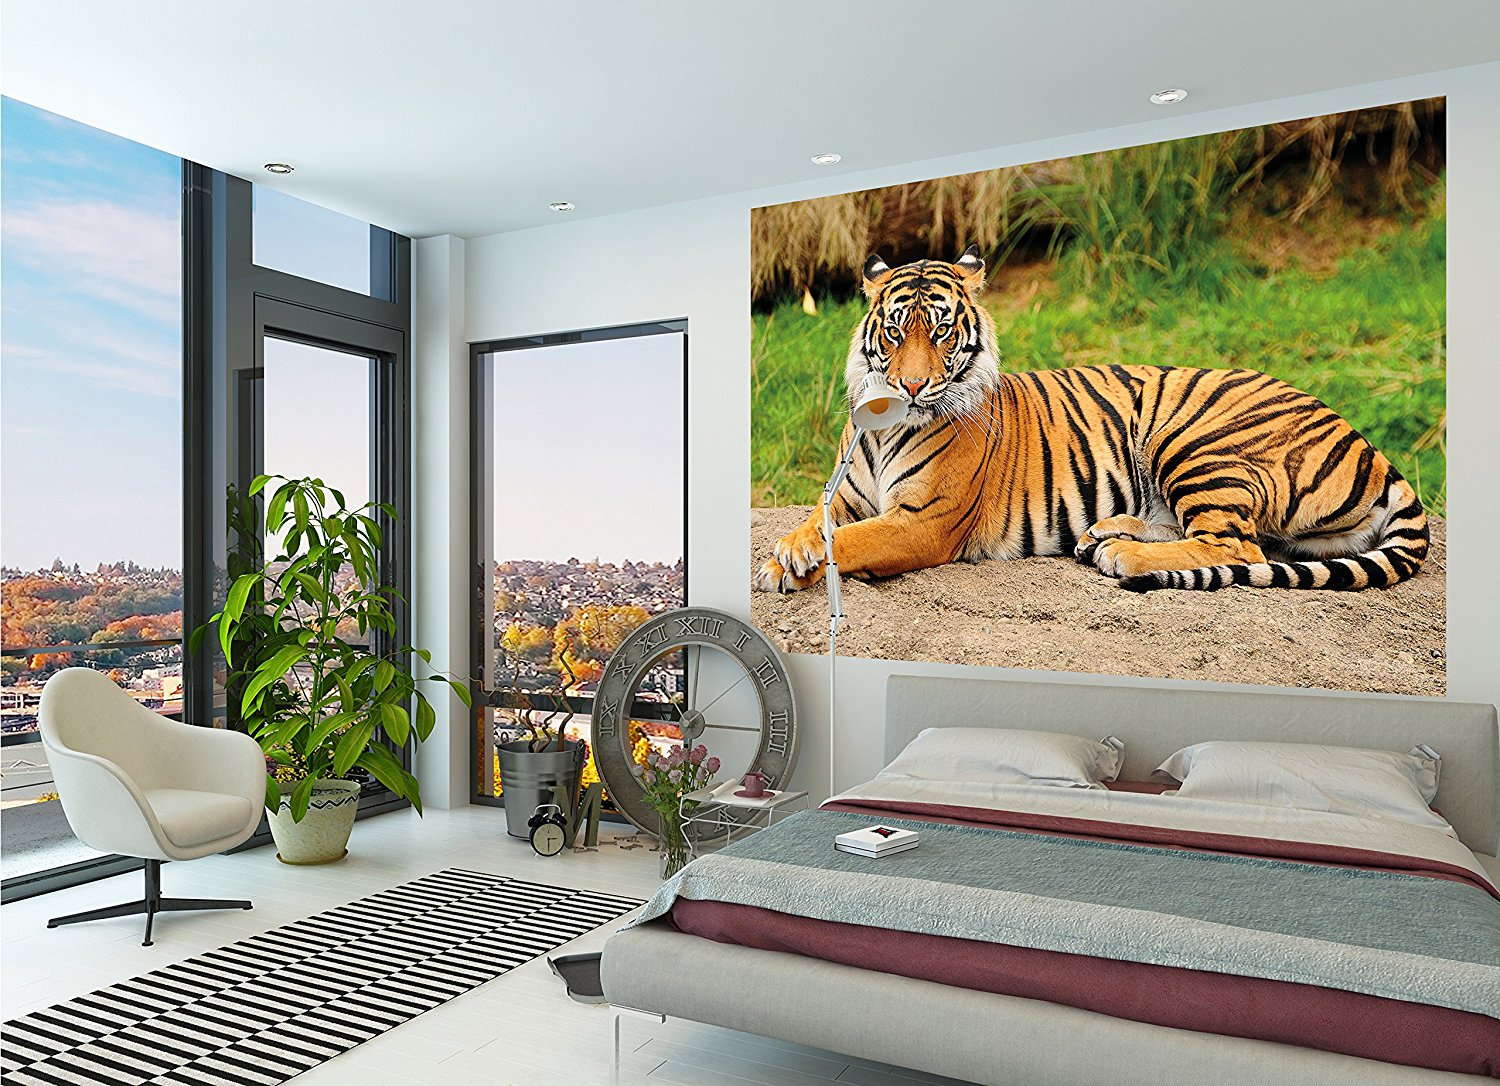 tiger in living room app